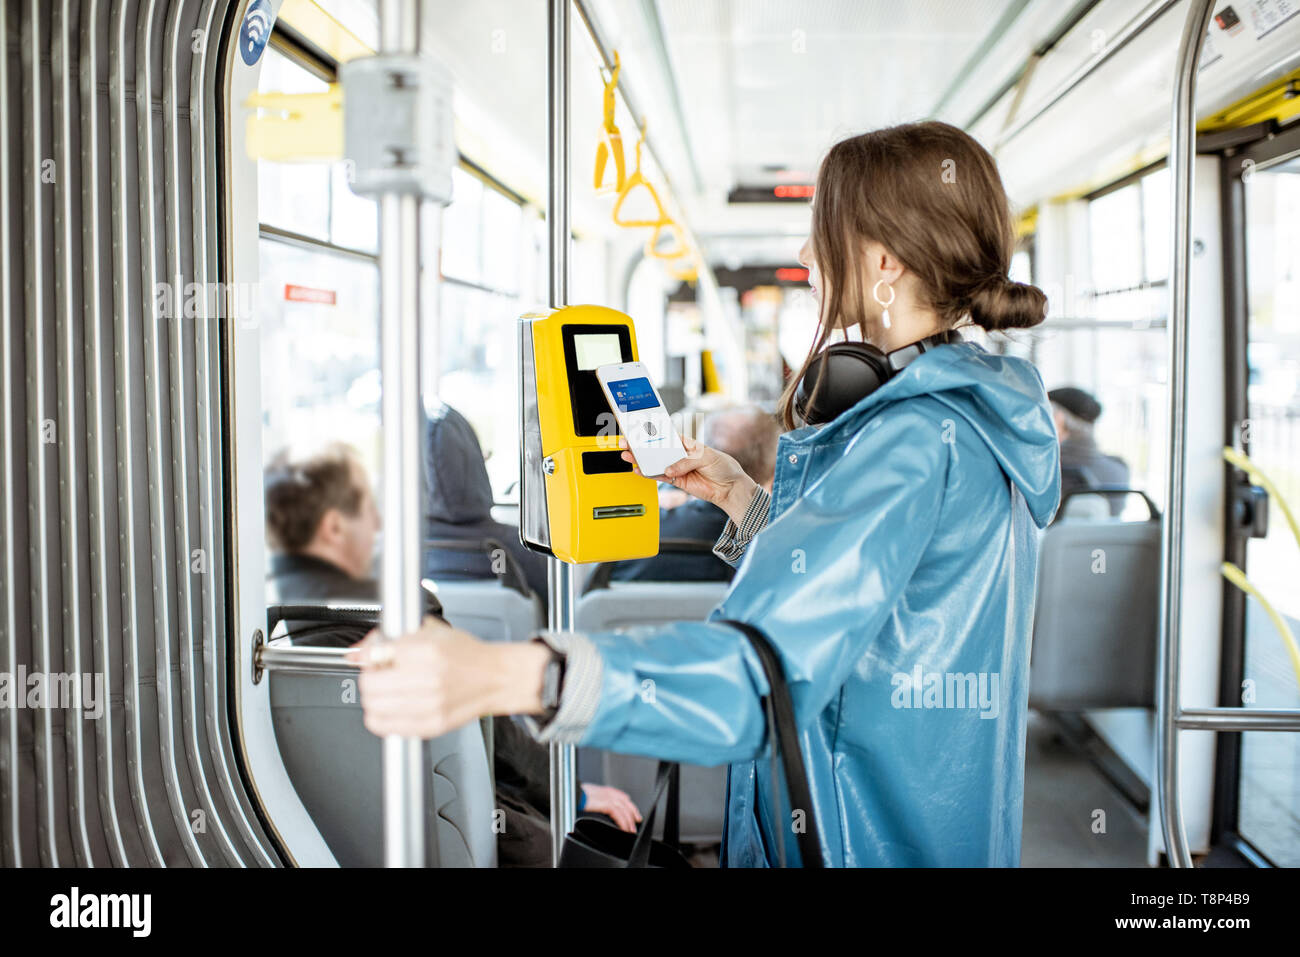 Frau Zahlung conctactless mit Smartphone für die öffentlichen Verkehrsmittel in der Straßenbahn Stockfoto